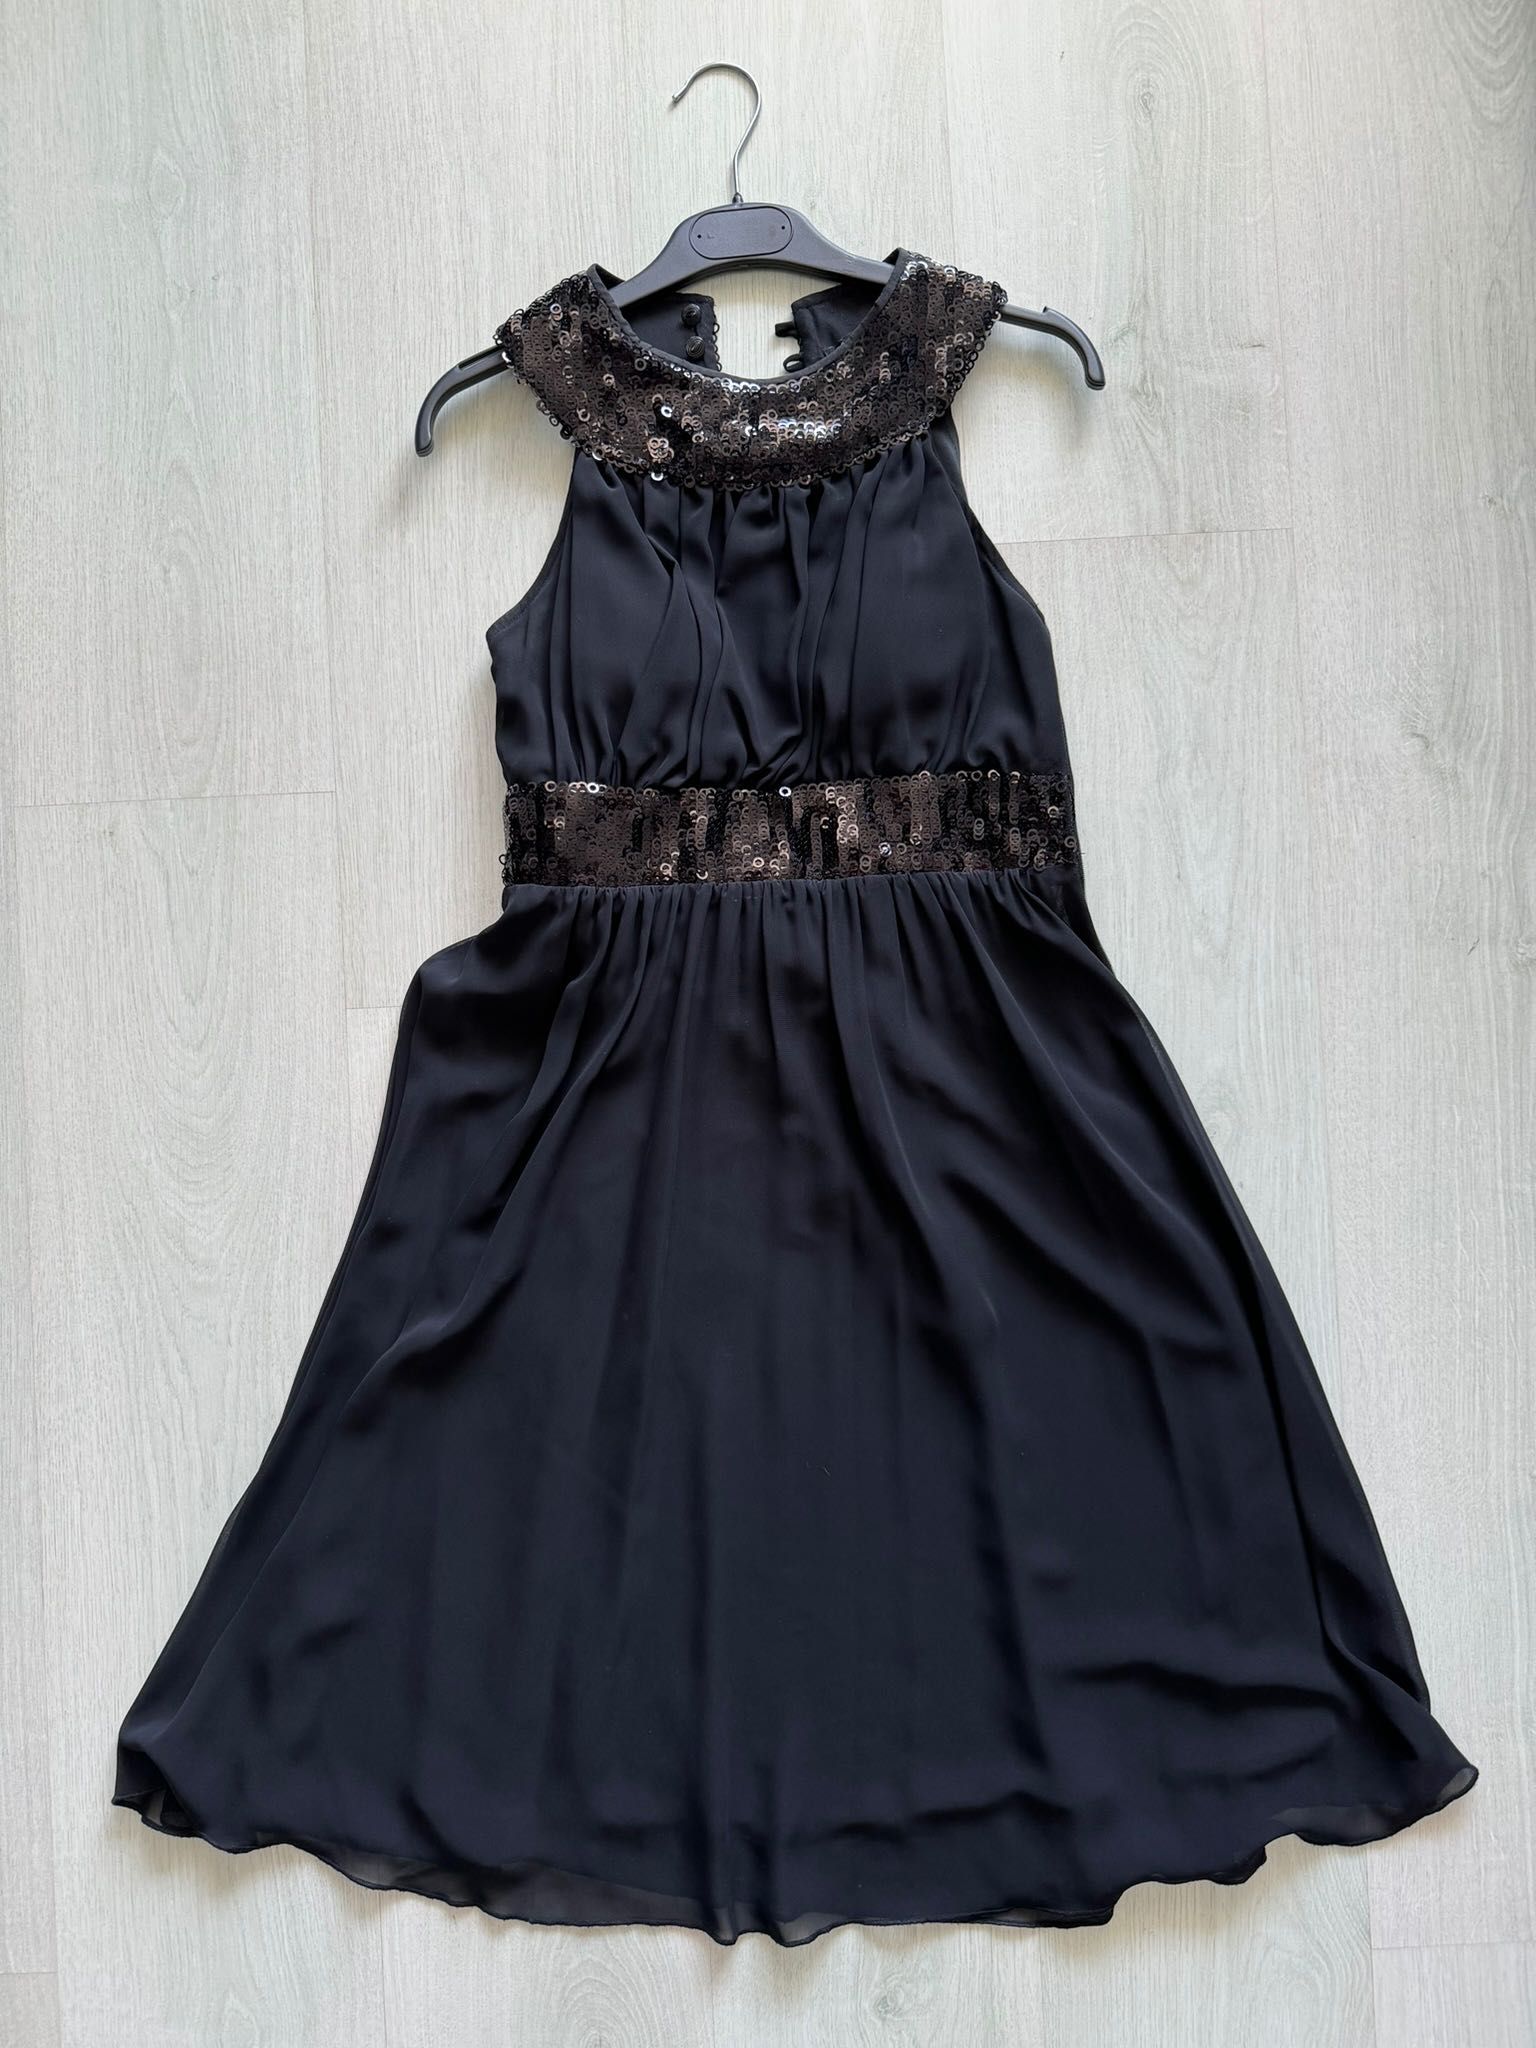 Rochie eleganta La Donna, mărimea 36, neagră